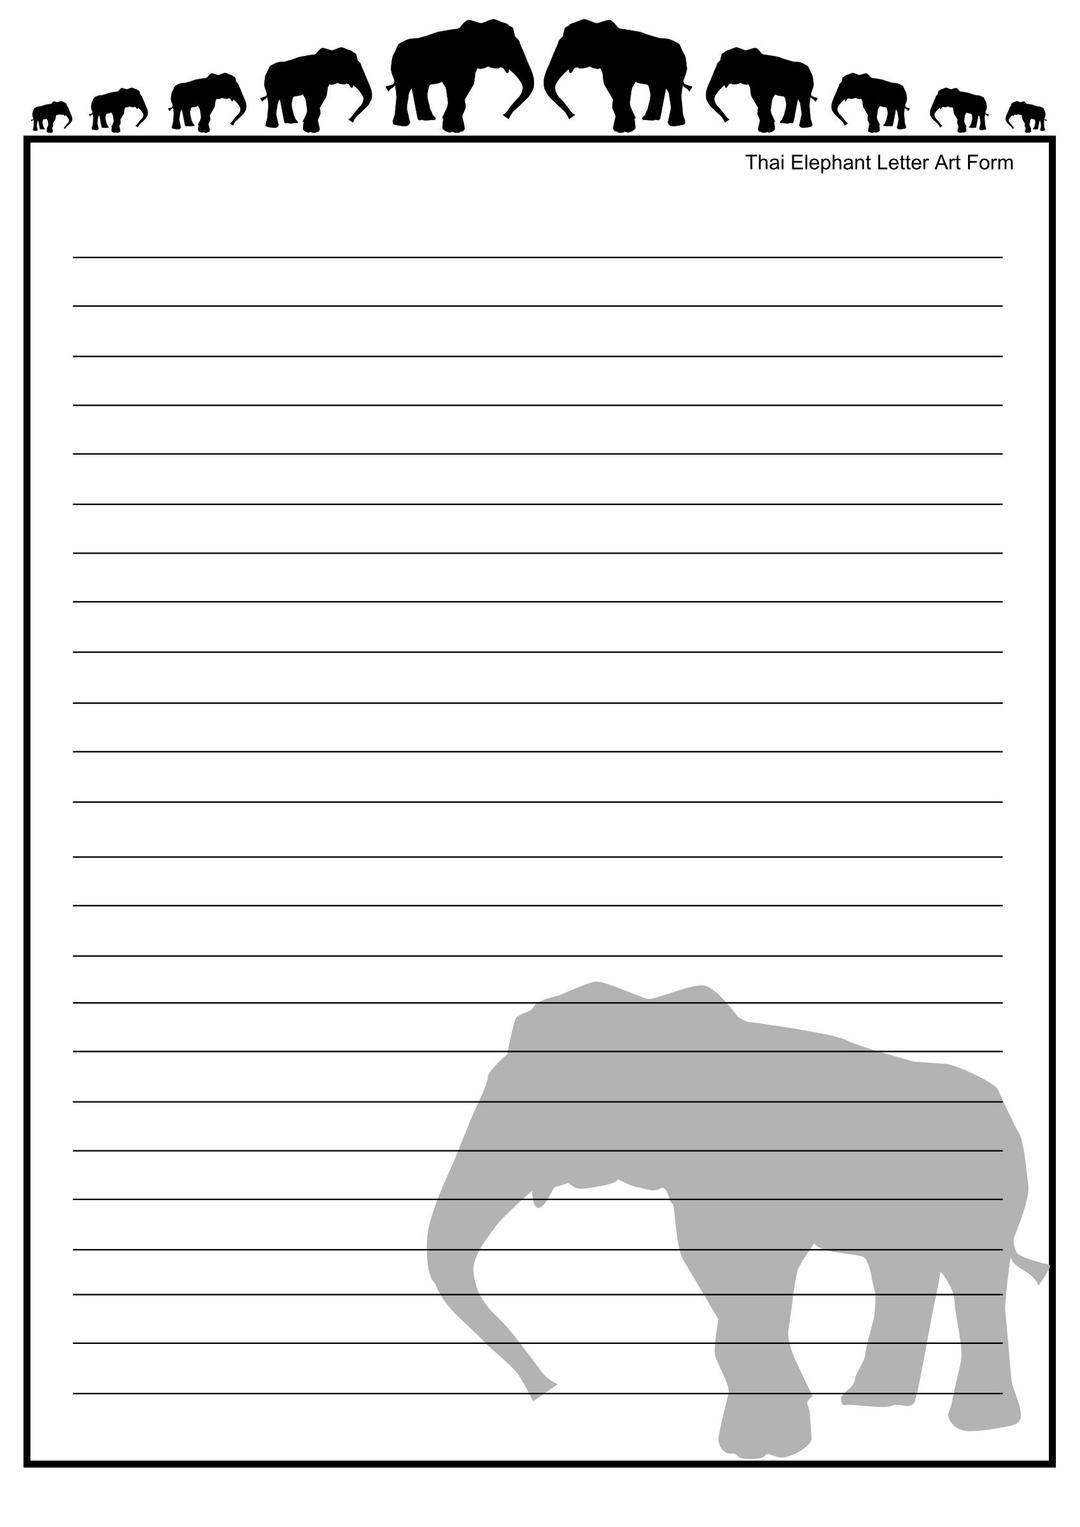 Thai Elephant Letter Art Form png transparent